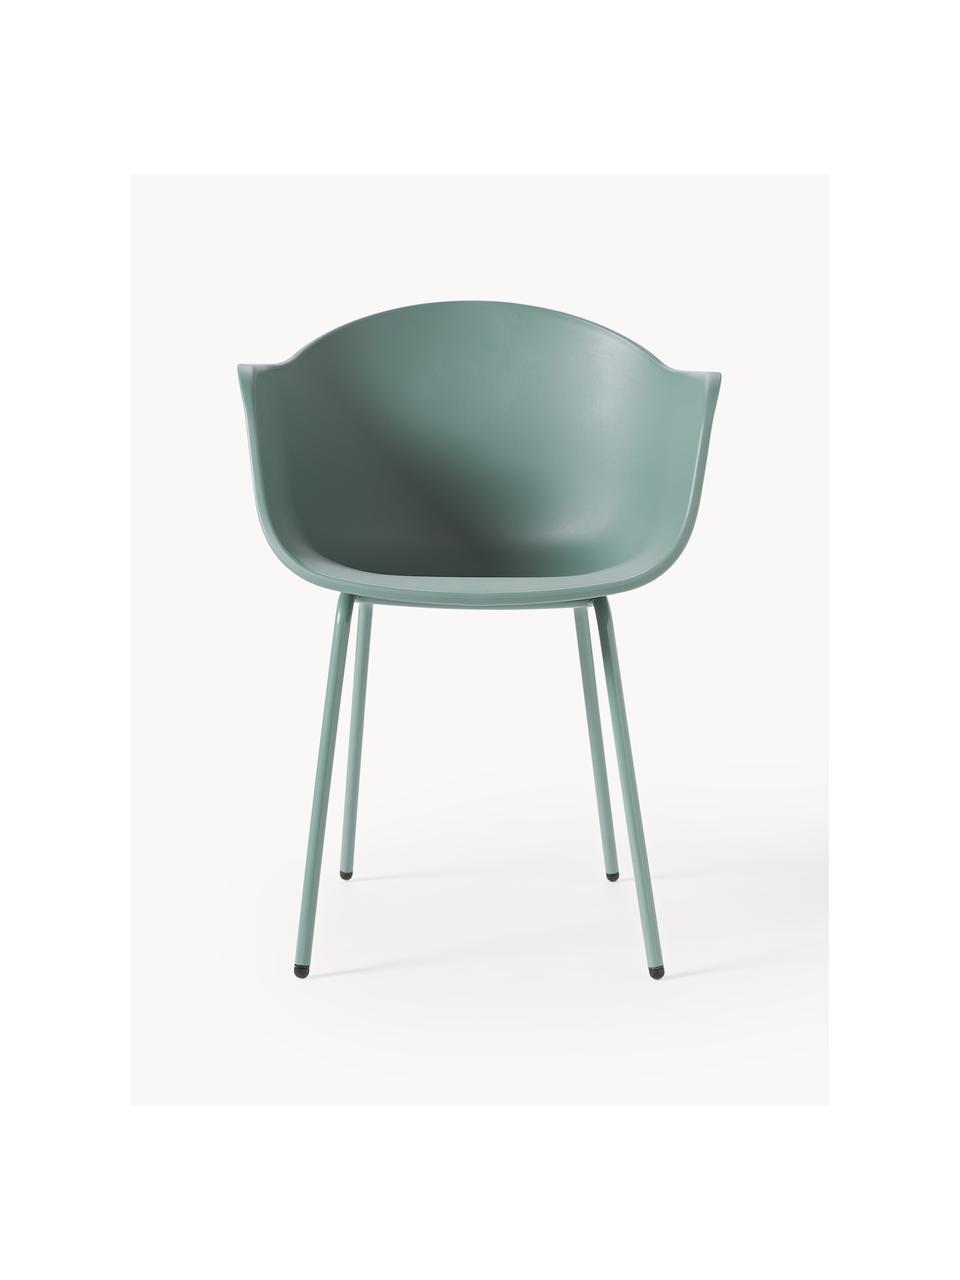 Interiérová/exteriérová židle Claire, Zelená, Š 60 cm, H 54 cm